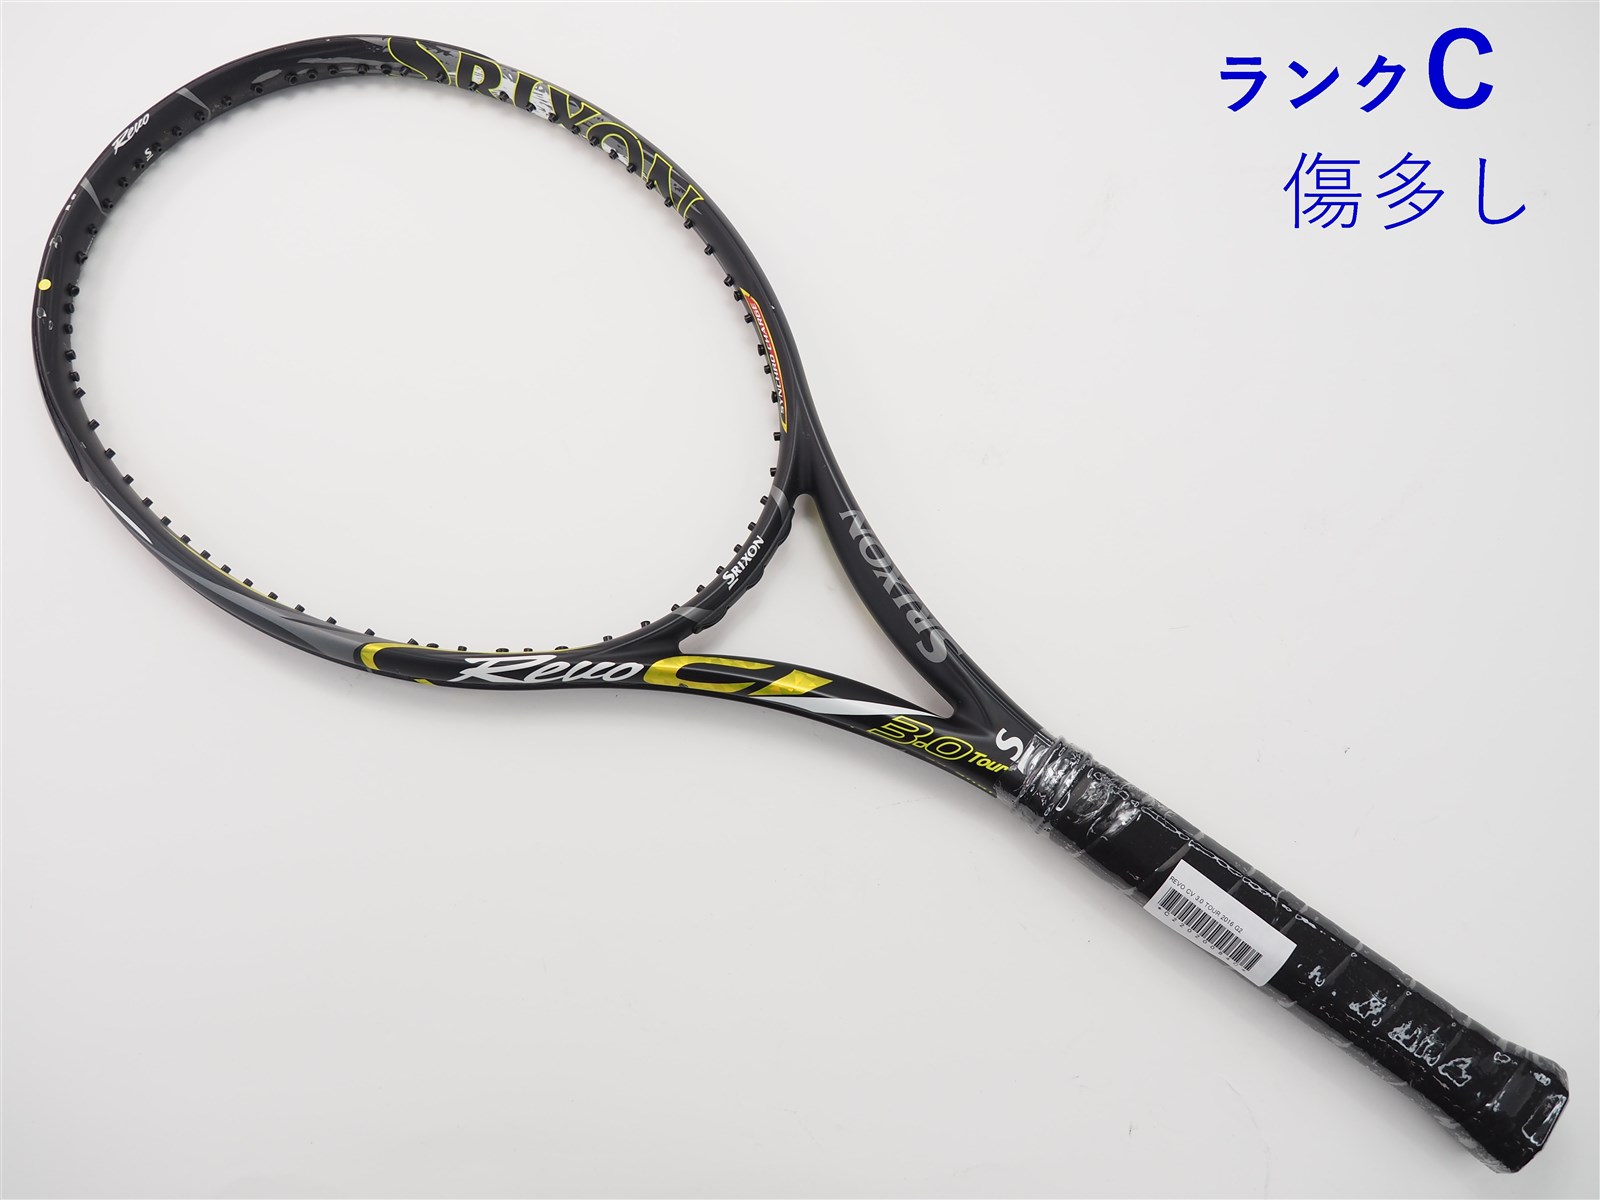 テニスラケット スリクソン レヴォ CV 3.0 ツアー 2016年モデル (G2